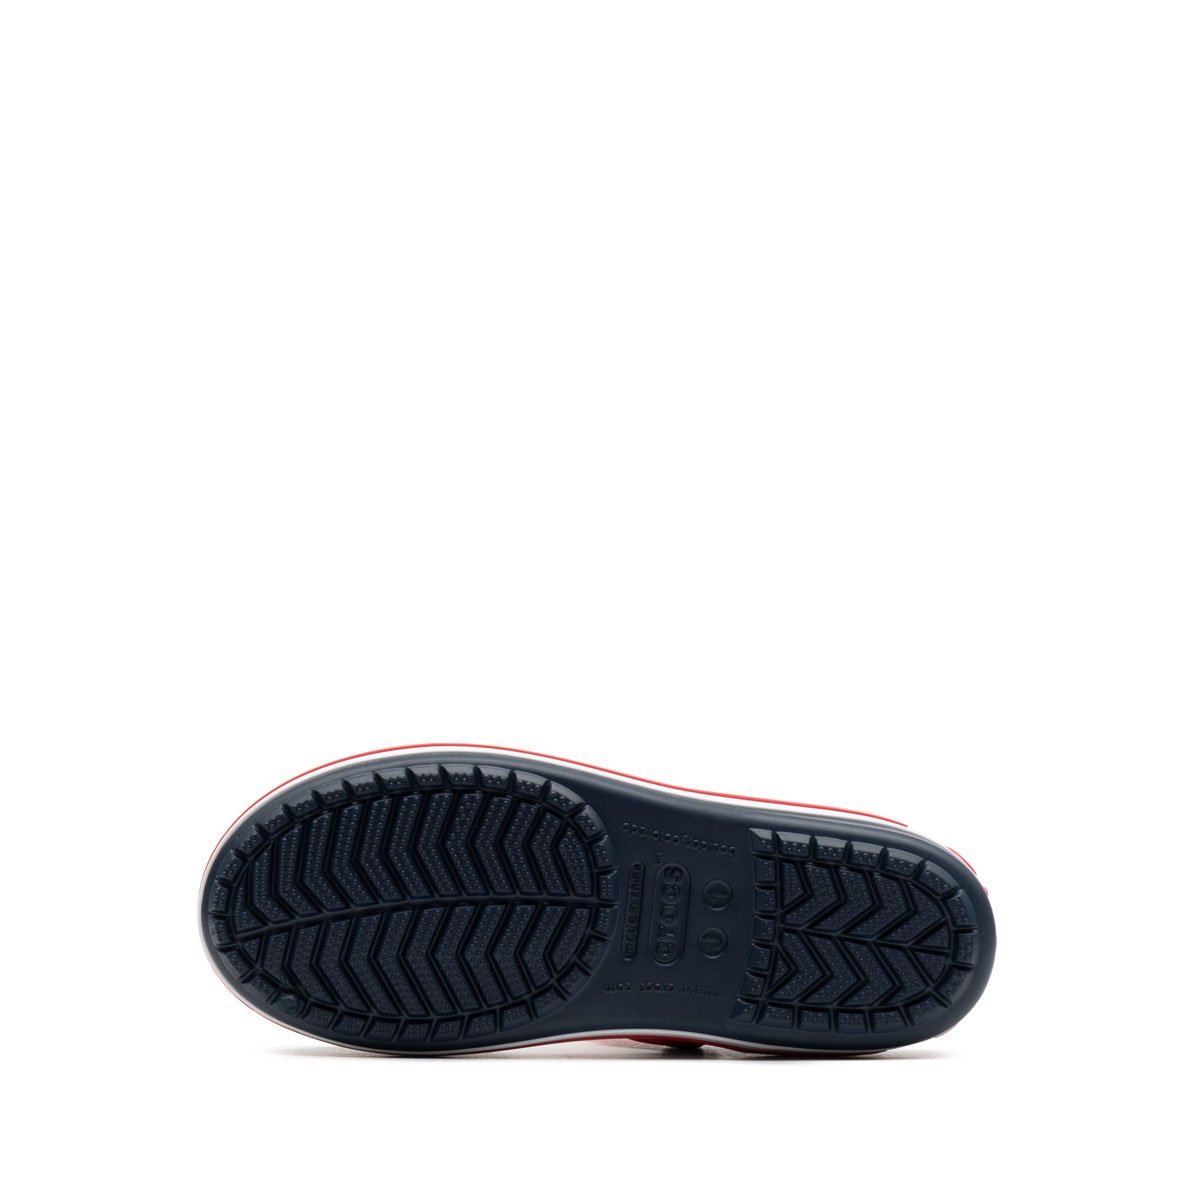 Crocs Crocband Sandal Детски сандали 12856-485